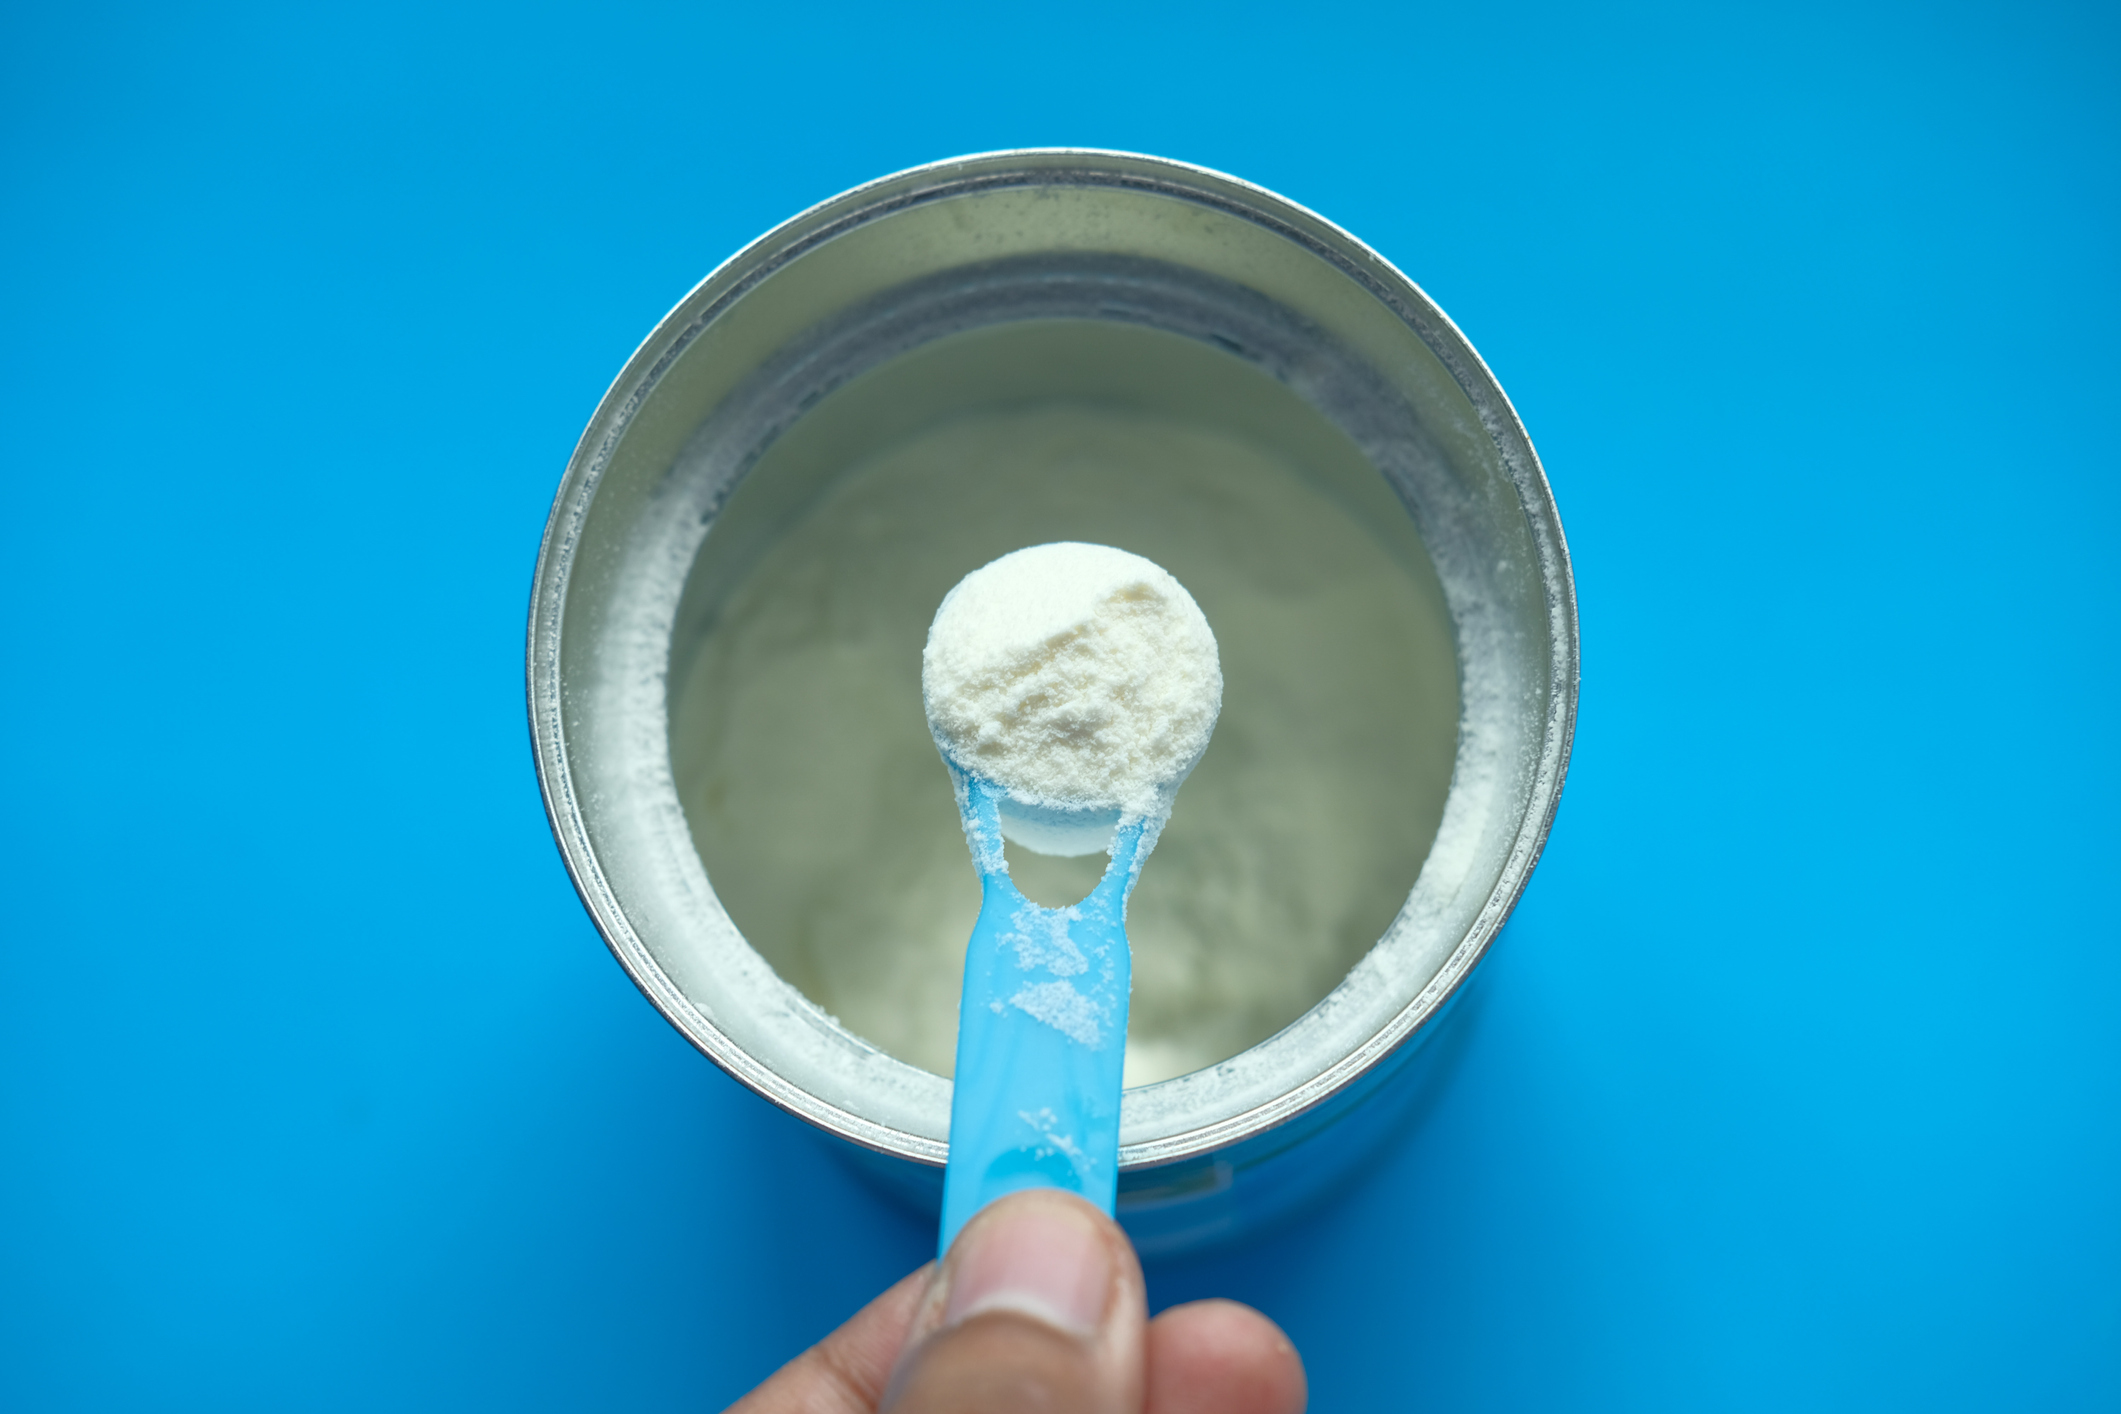 lata de fórmula ou leite em pó aberta sobre fundo azul. Uma mão segura uma colher medidora com o pó dentro.